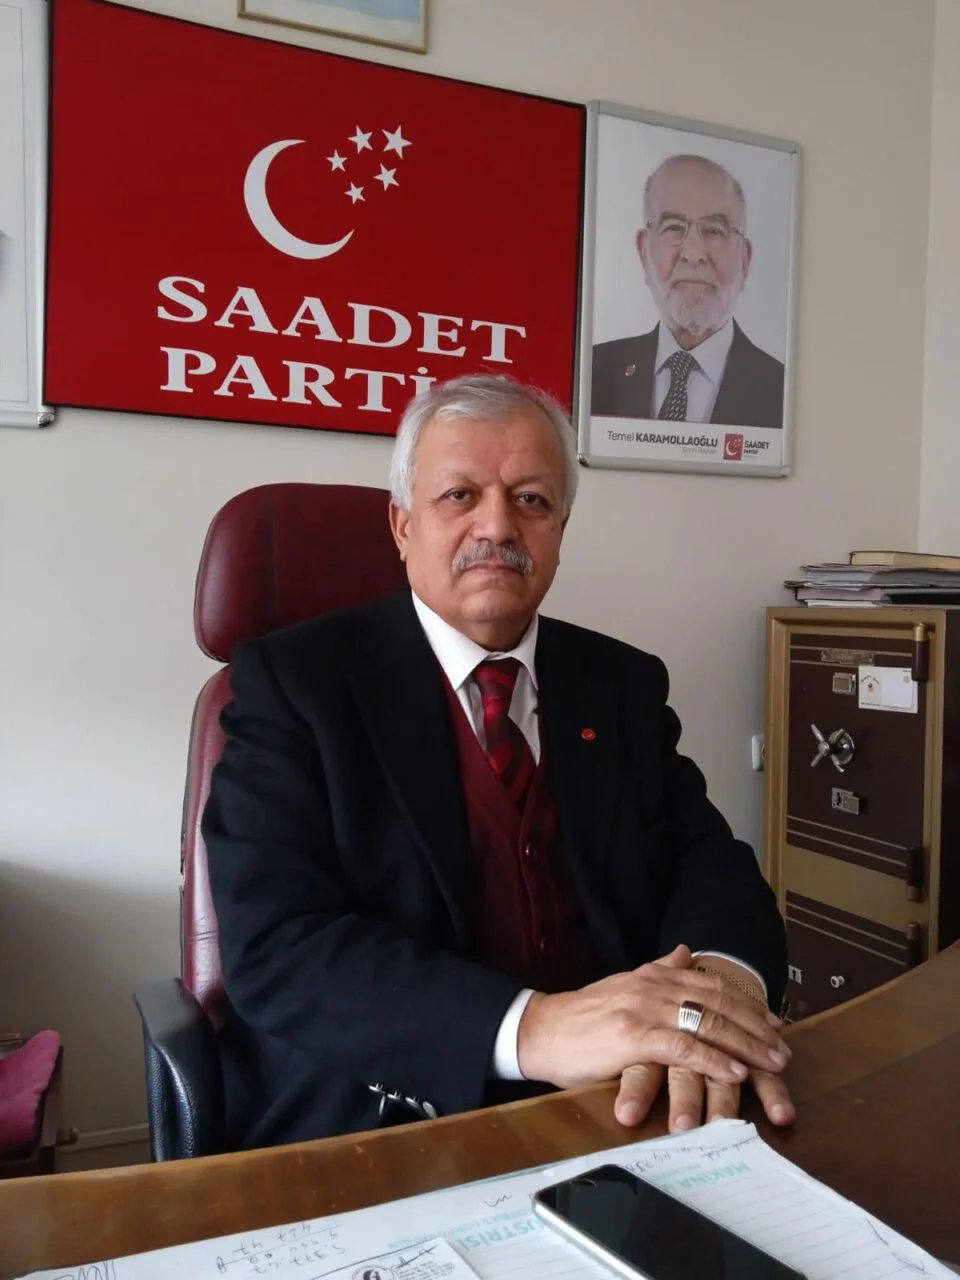 Saadet Partisi Türkiye’nin Umududur - Kırıkkale Haber, Son Dakika Kırıkkale Haberleri